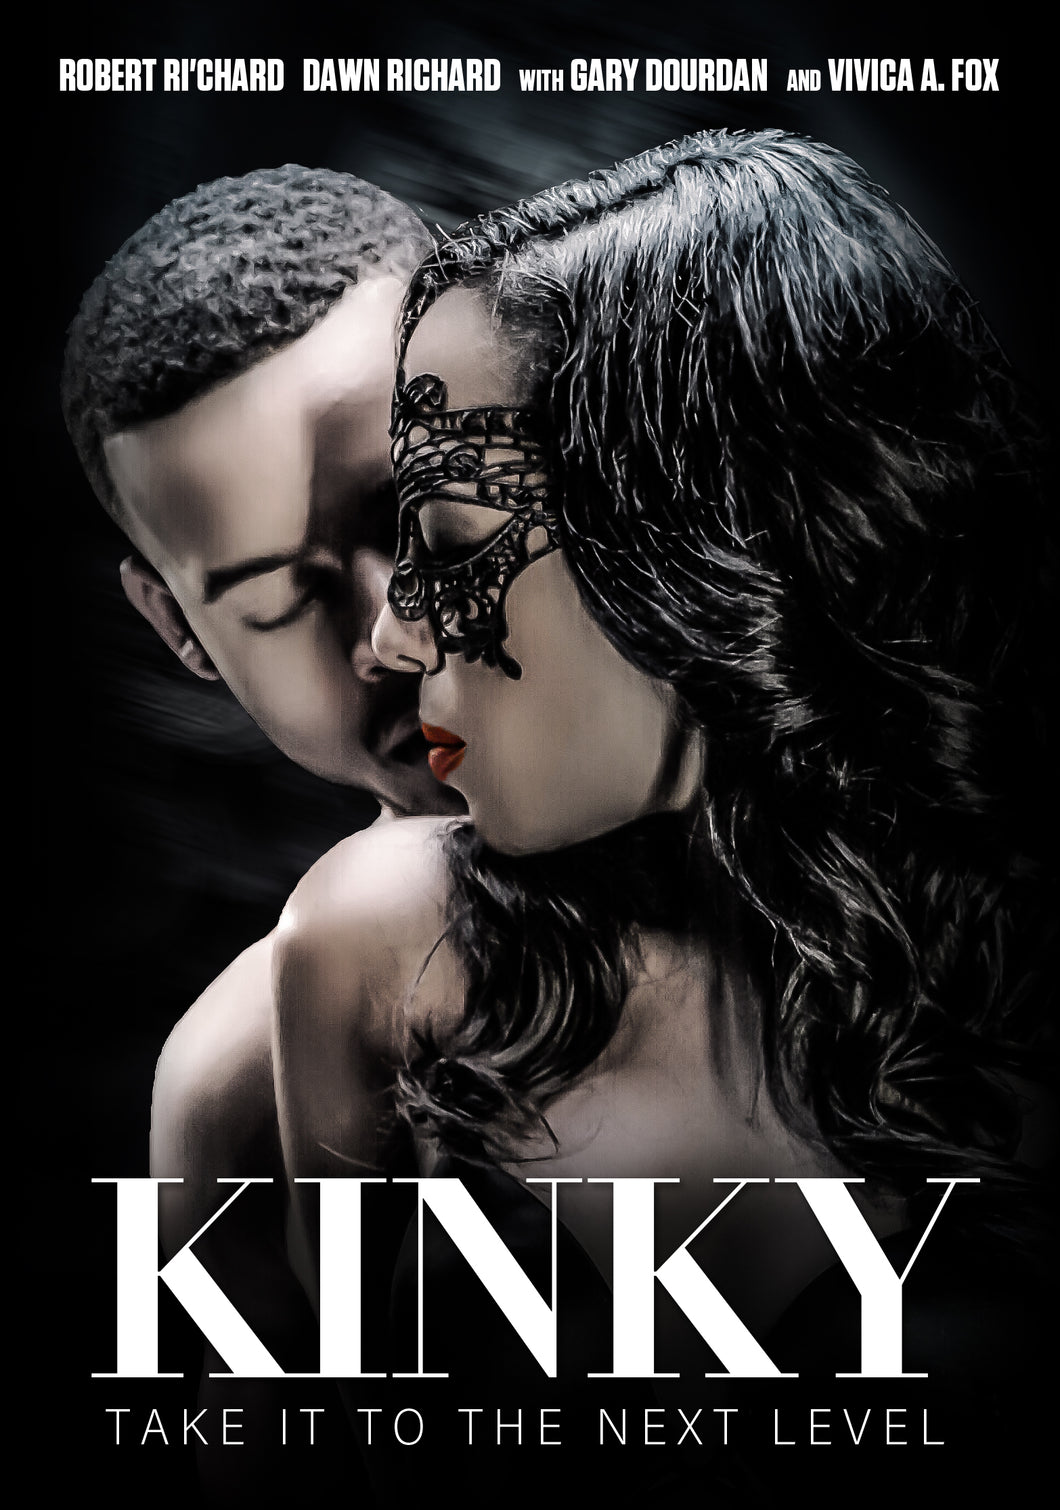 Kinky (DVD)